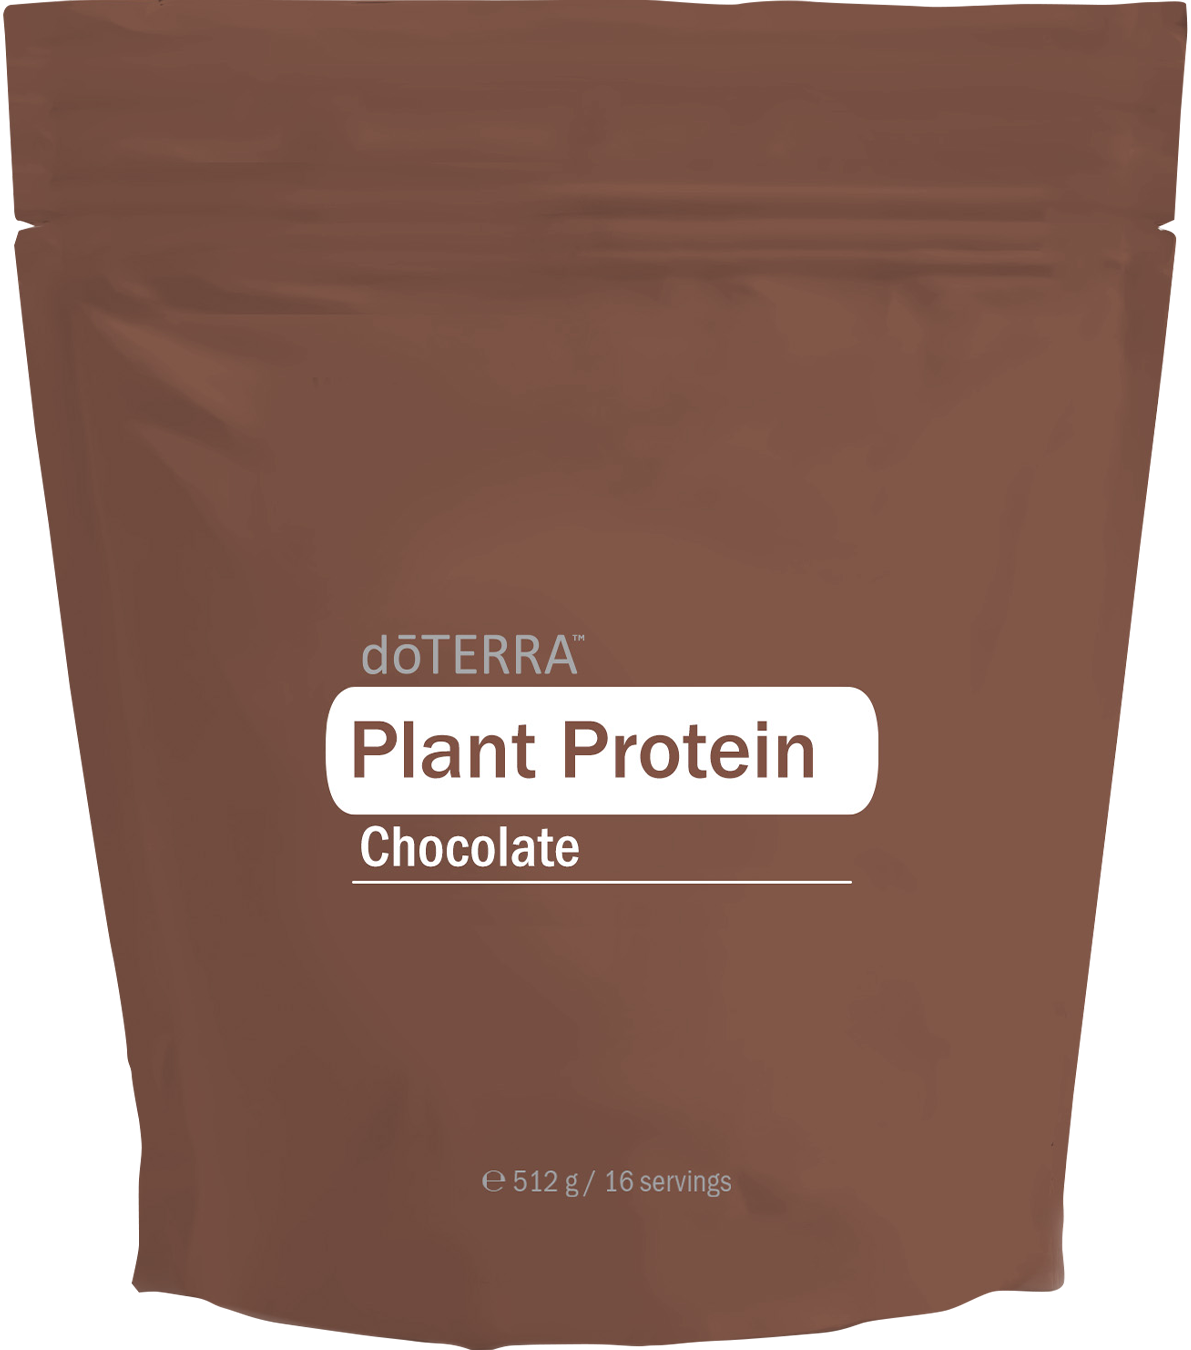 Čokoládový rastlinný proteín dōTERRA™